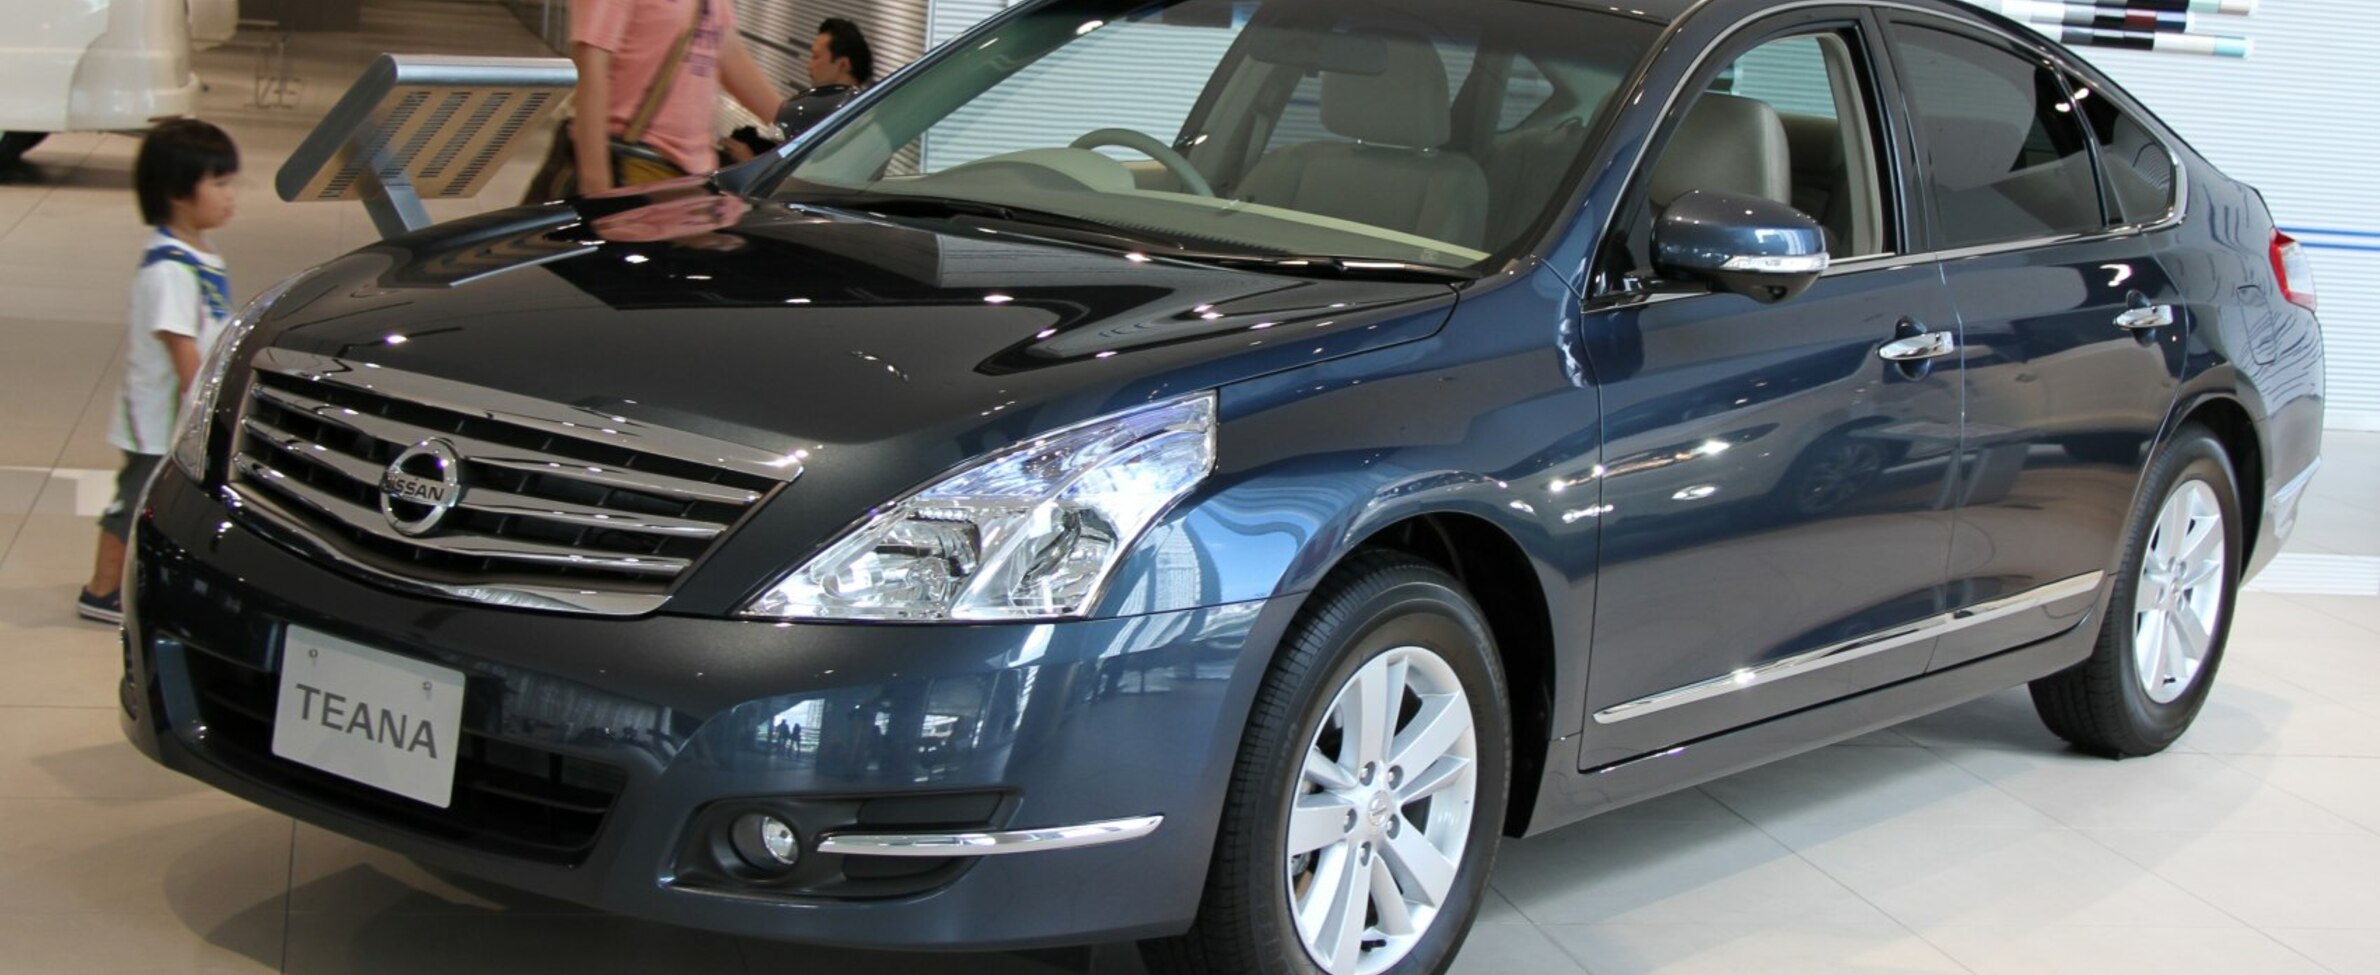 Giá xe Nissan Teana 20 TA 2011 phiên bản và đánh giá từ các chuyên gia